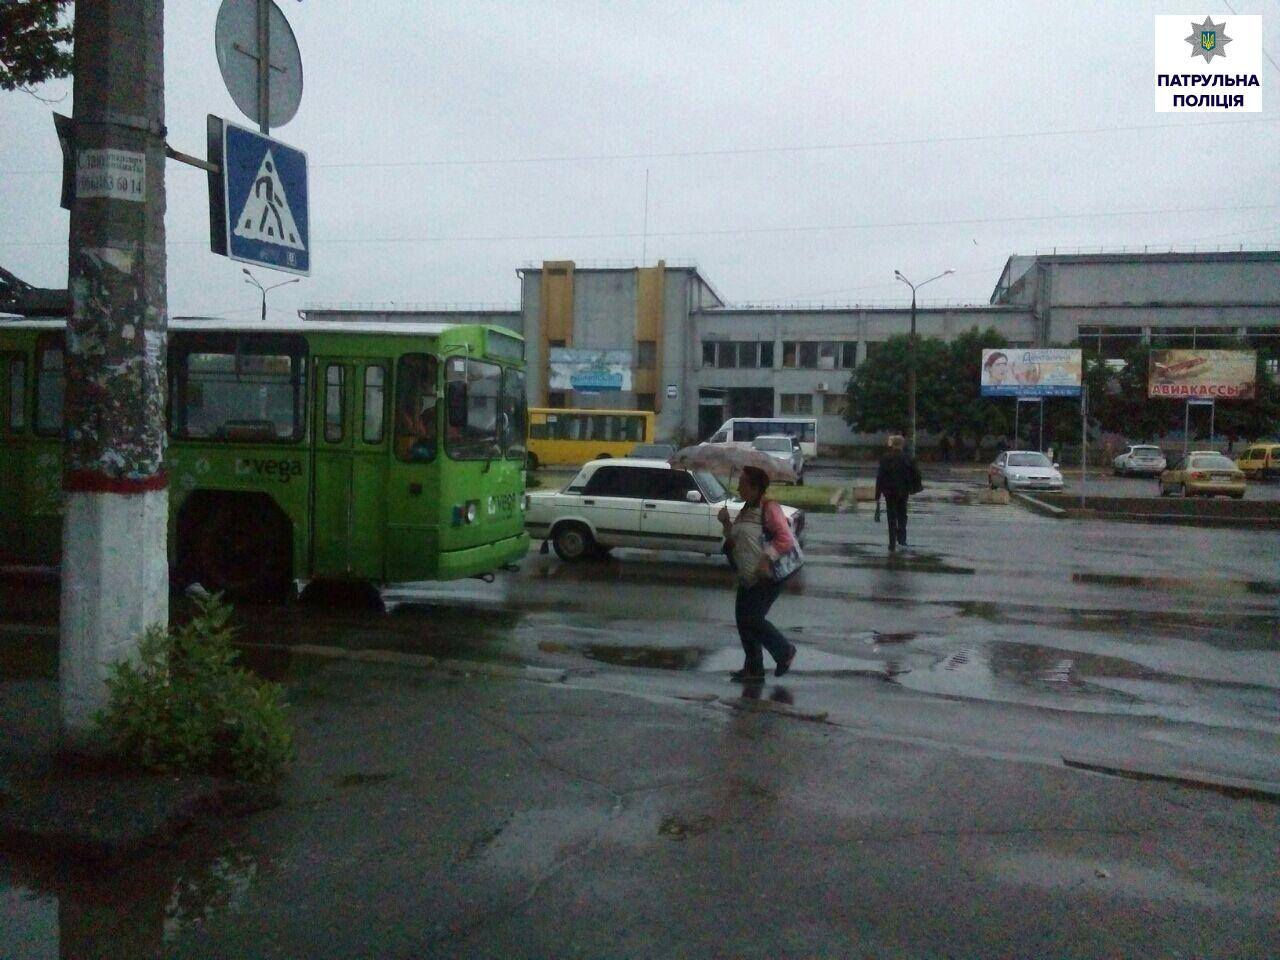 Миколаївці через неправильно встановлену зупинку загрожують потрапити під колеса 